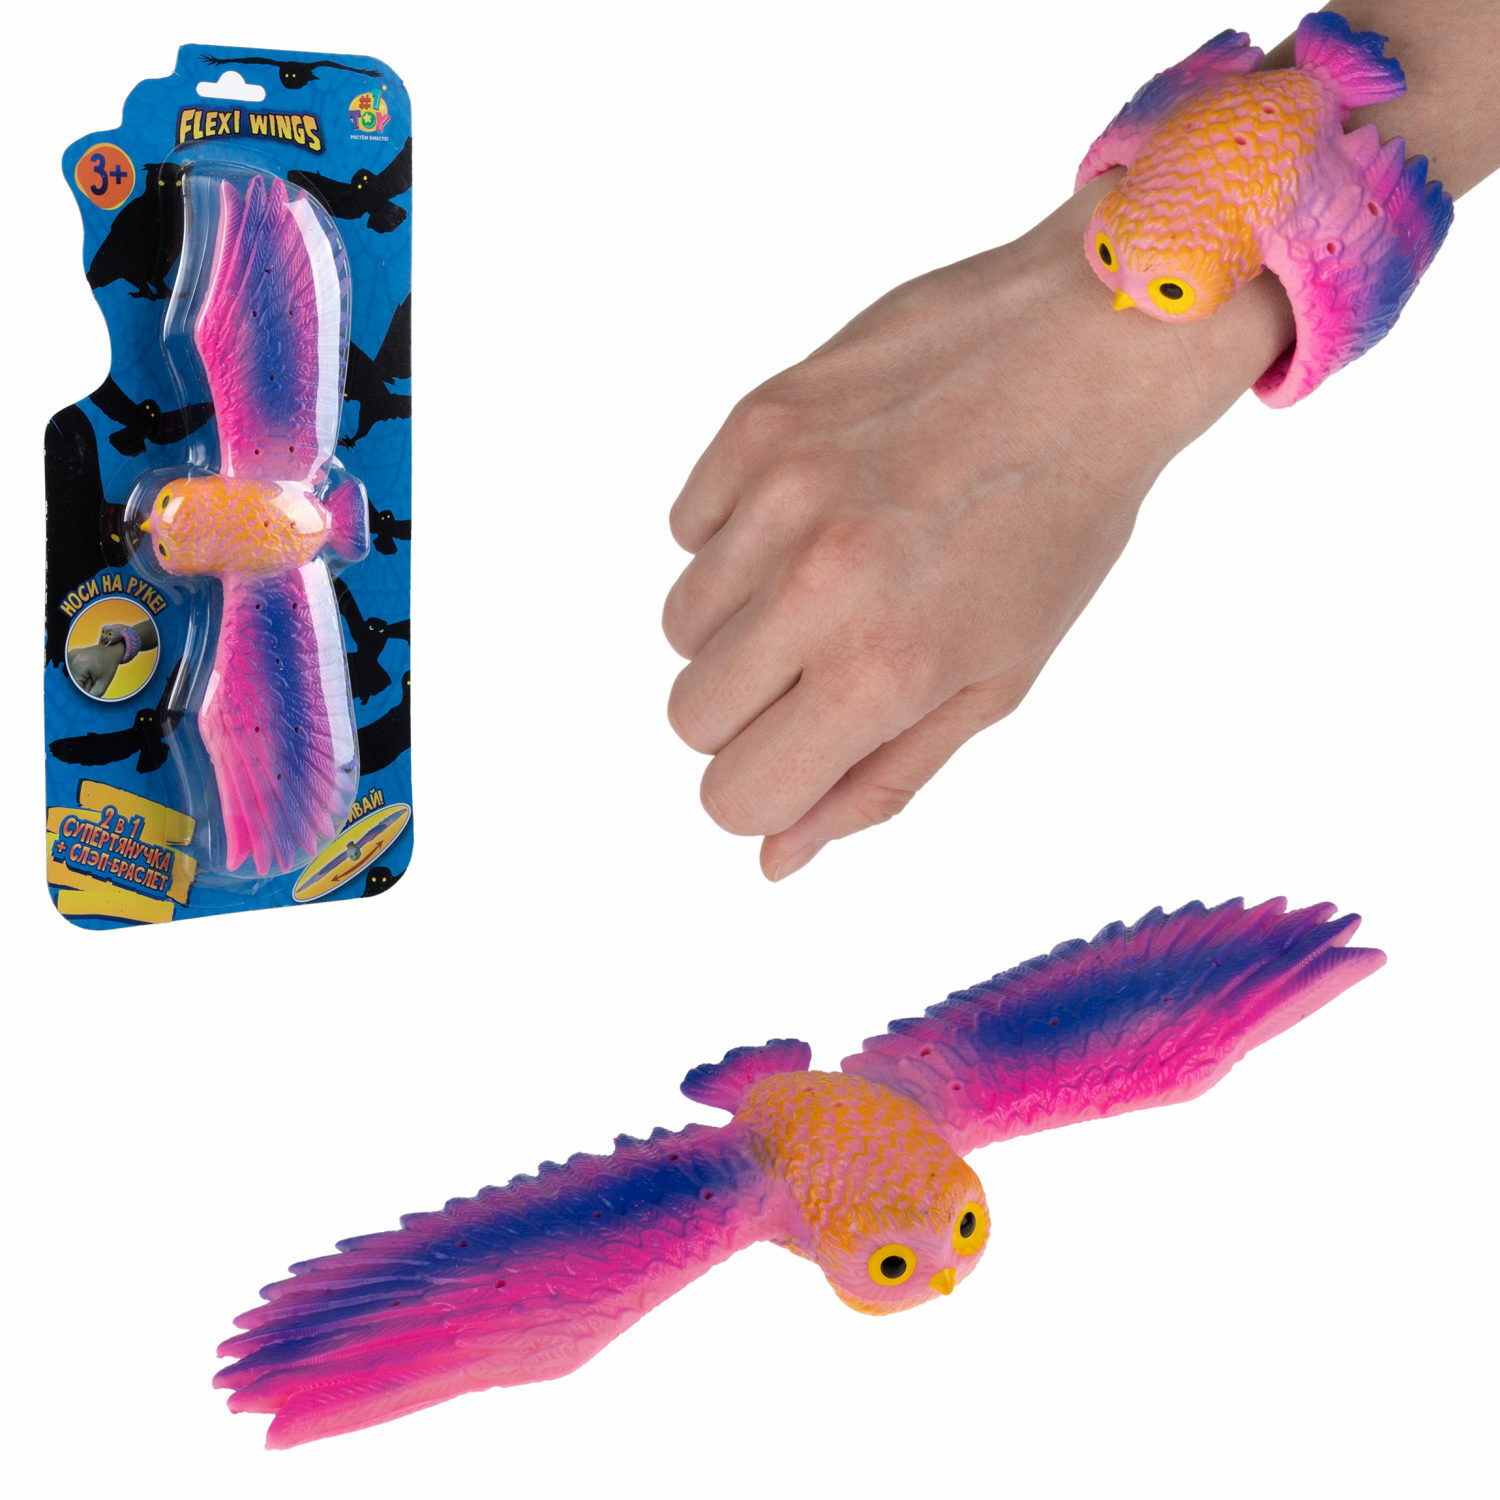 Фигурка-браслет 1TOY Flexi Wings 2 в 1 Супертянучка и Слэп-браслет в виде совы розовый - фото 2